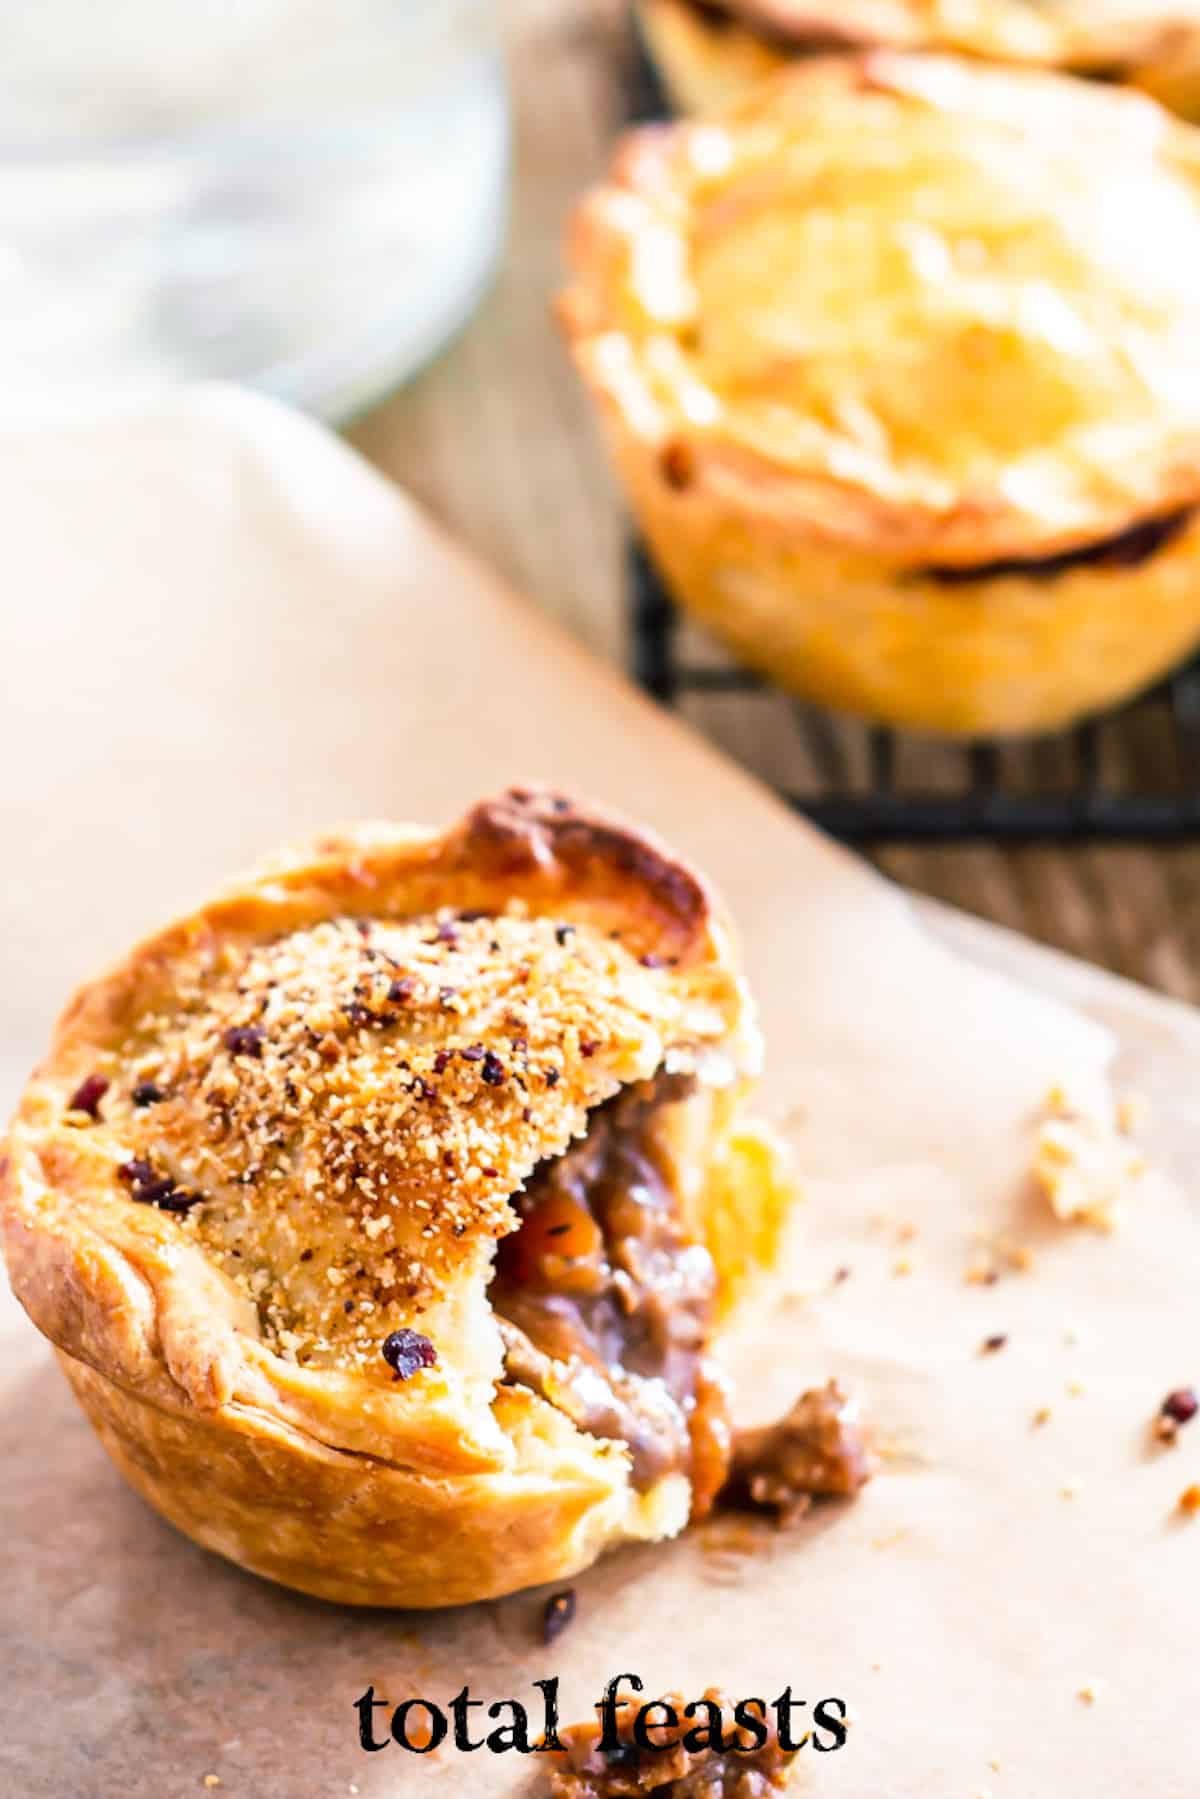 australian meat pie - Total Feasts